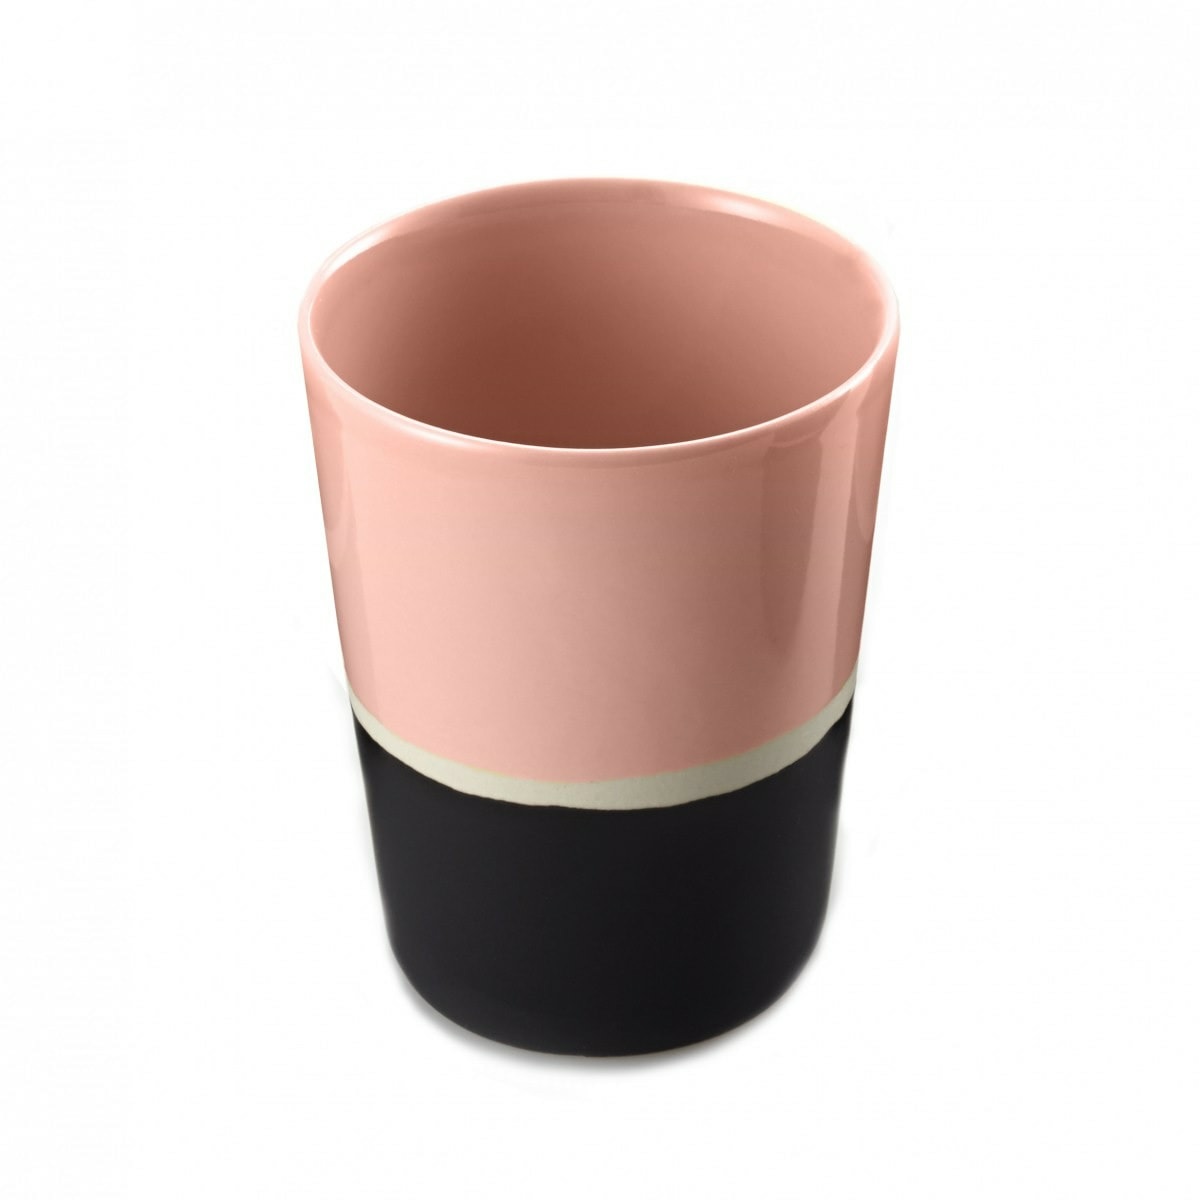 Ceramic Glass Sicilia, Black Radish - H10 cm - Ceramic - image 9